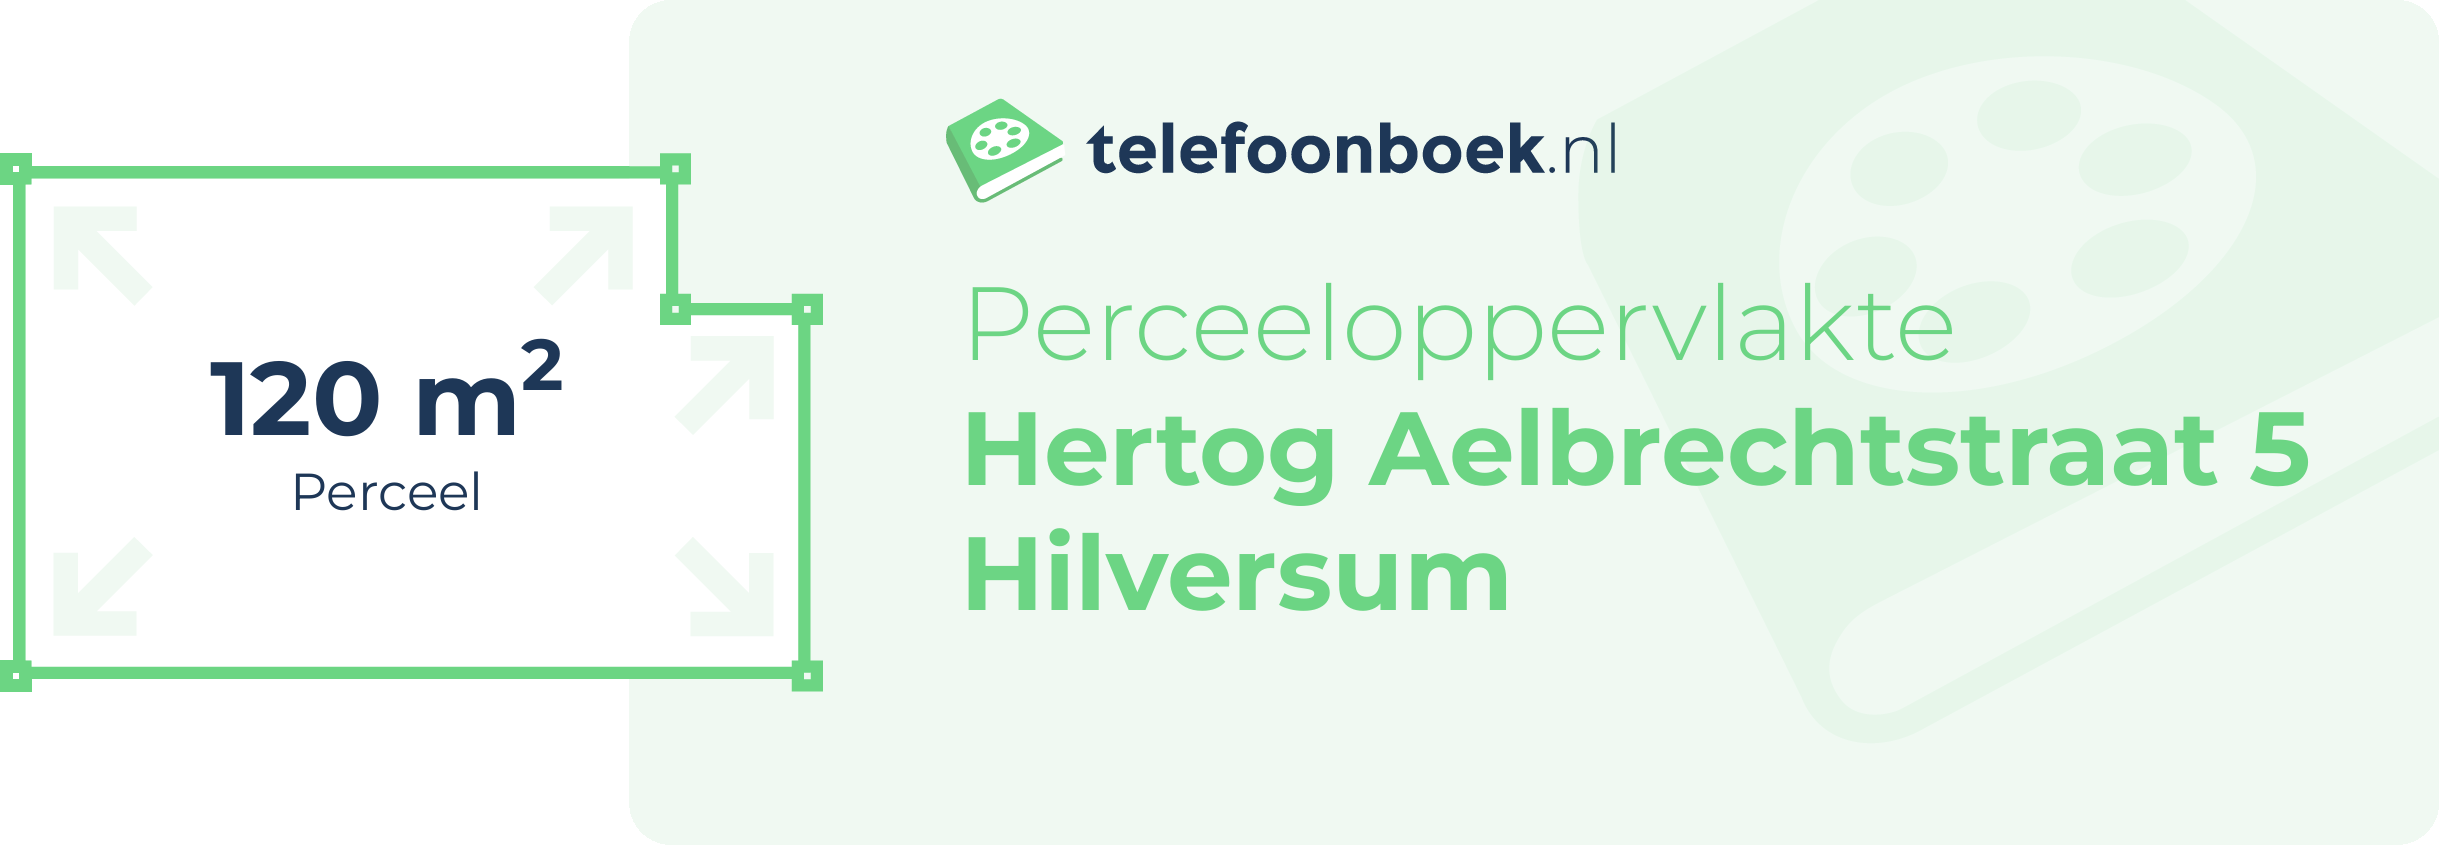 Perceeloppervlakte Hertog Aelbrechtstraat 5 Hilversum